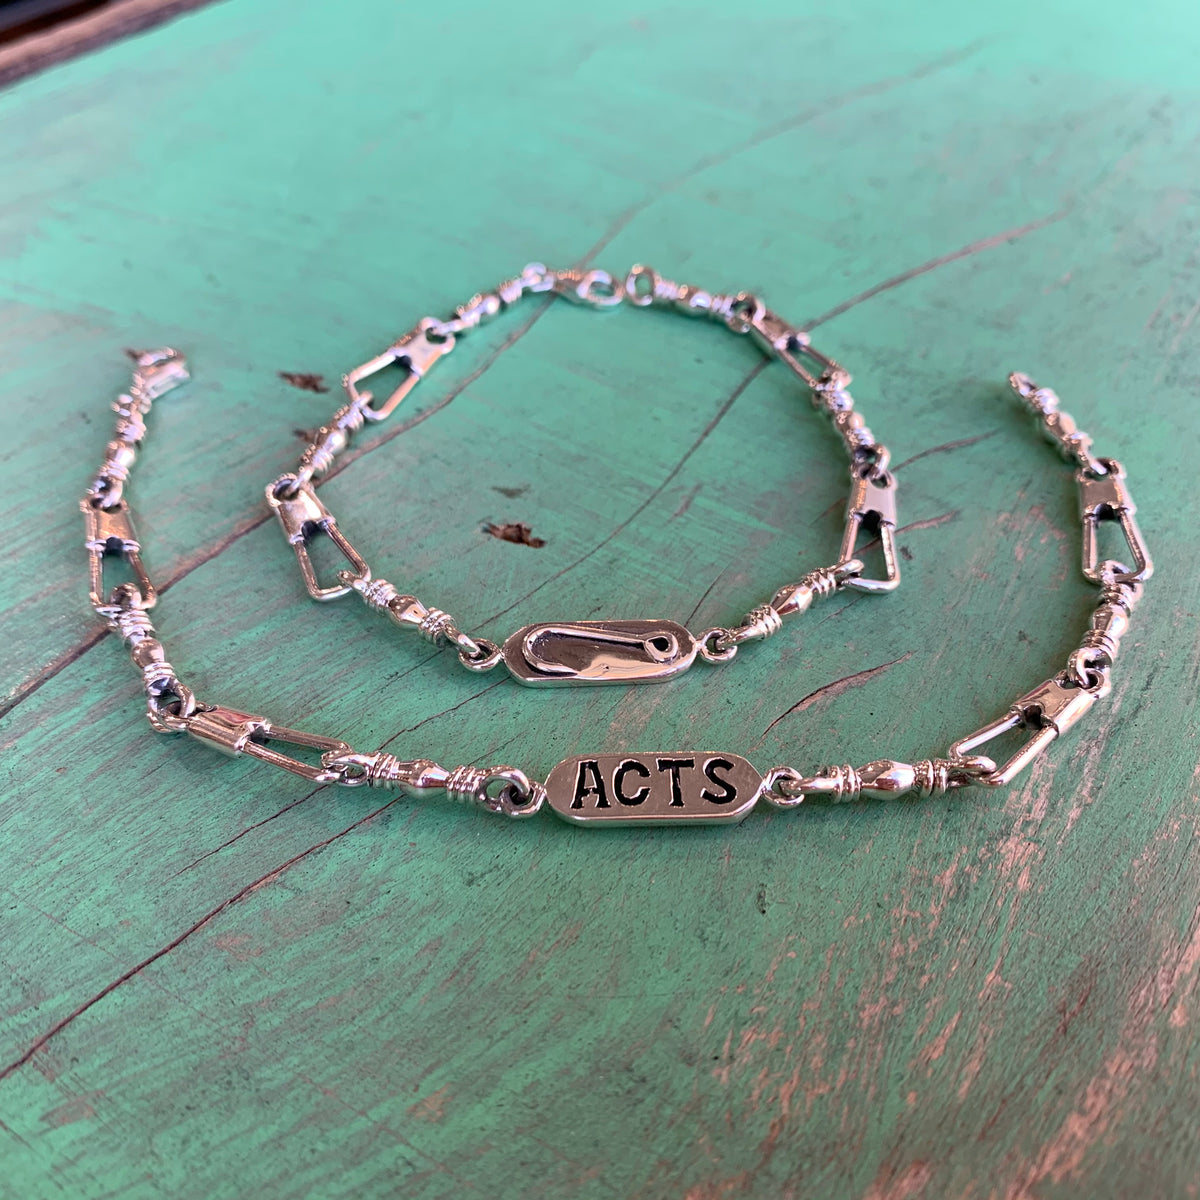 acts bracelet